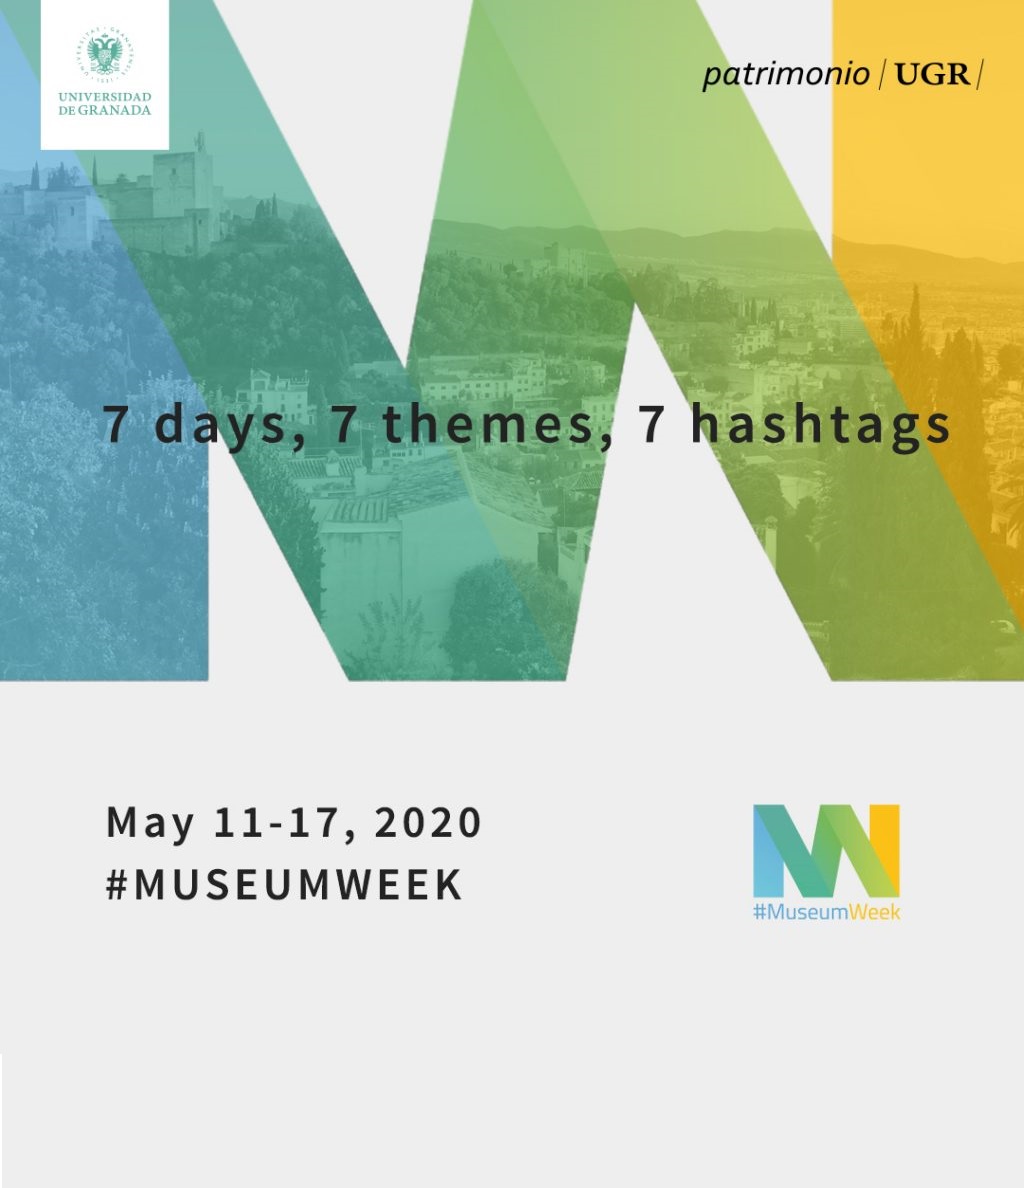 MUSEUM WEEK 2020